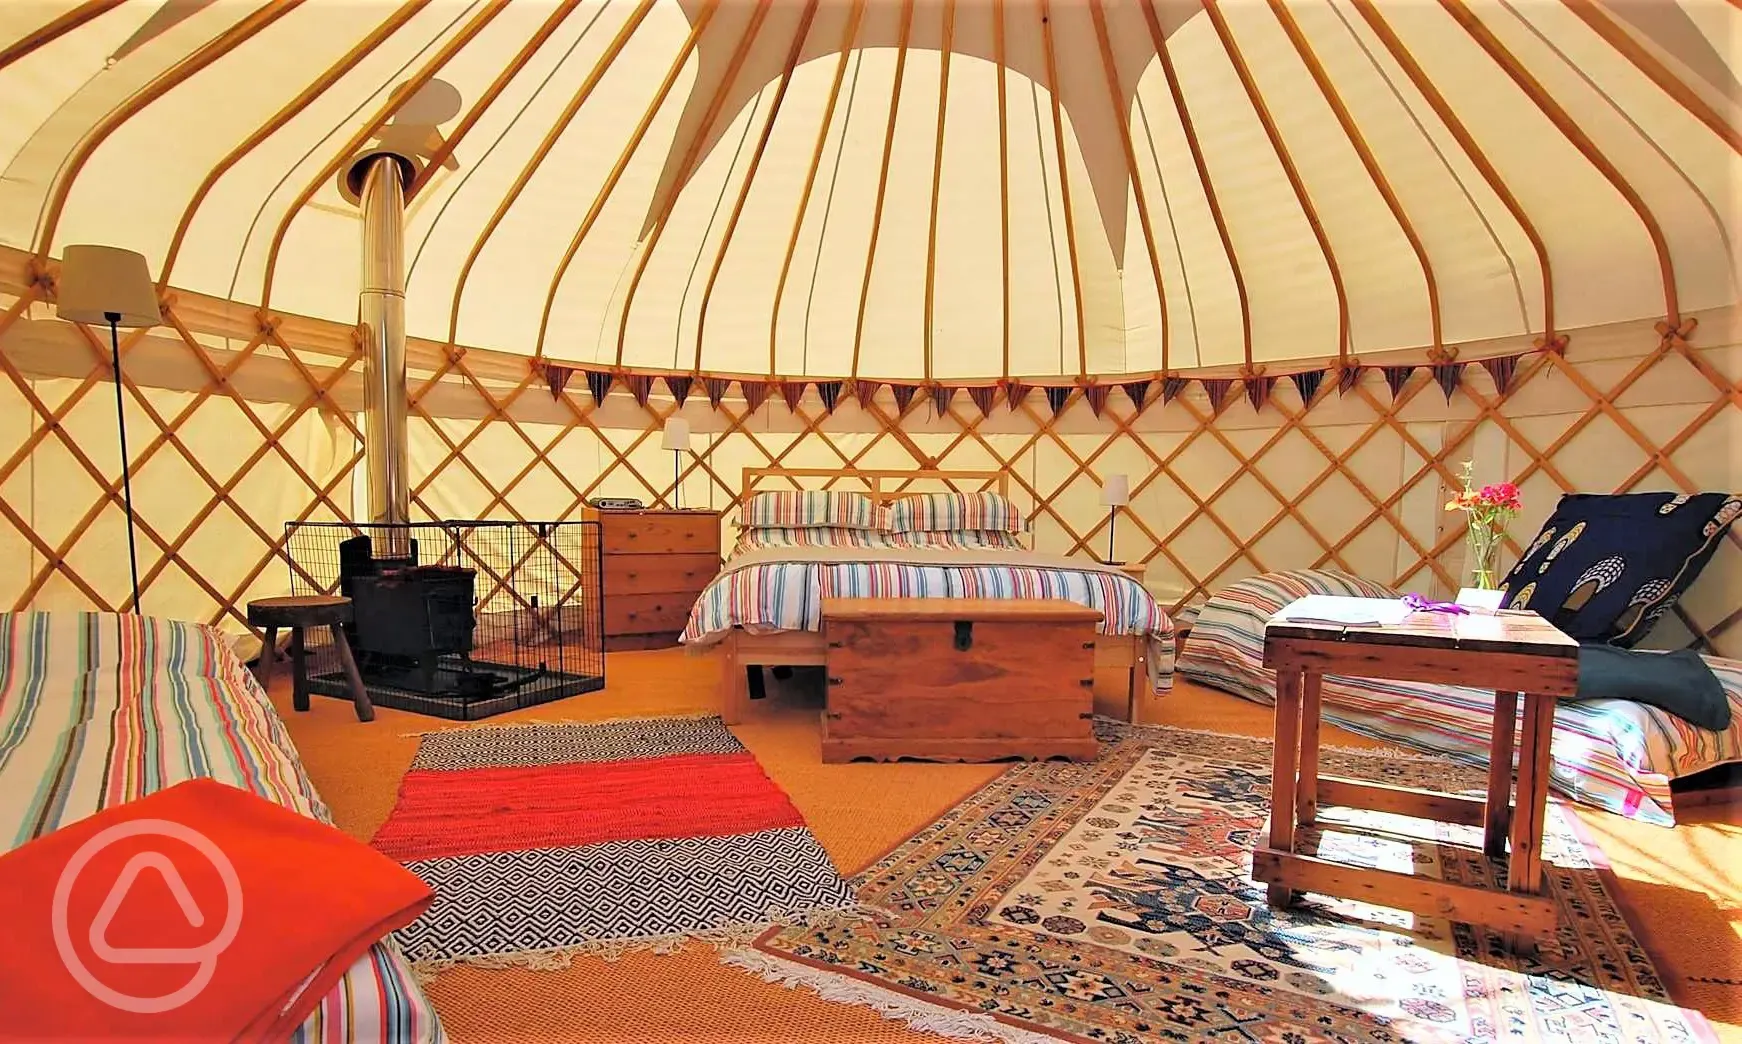 Yurt interior 